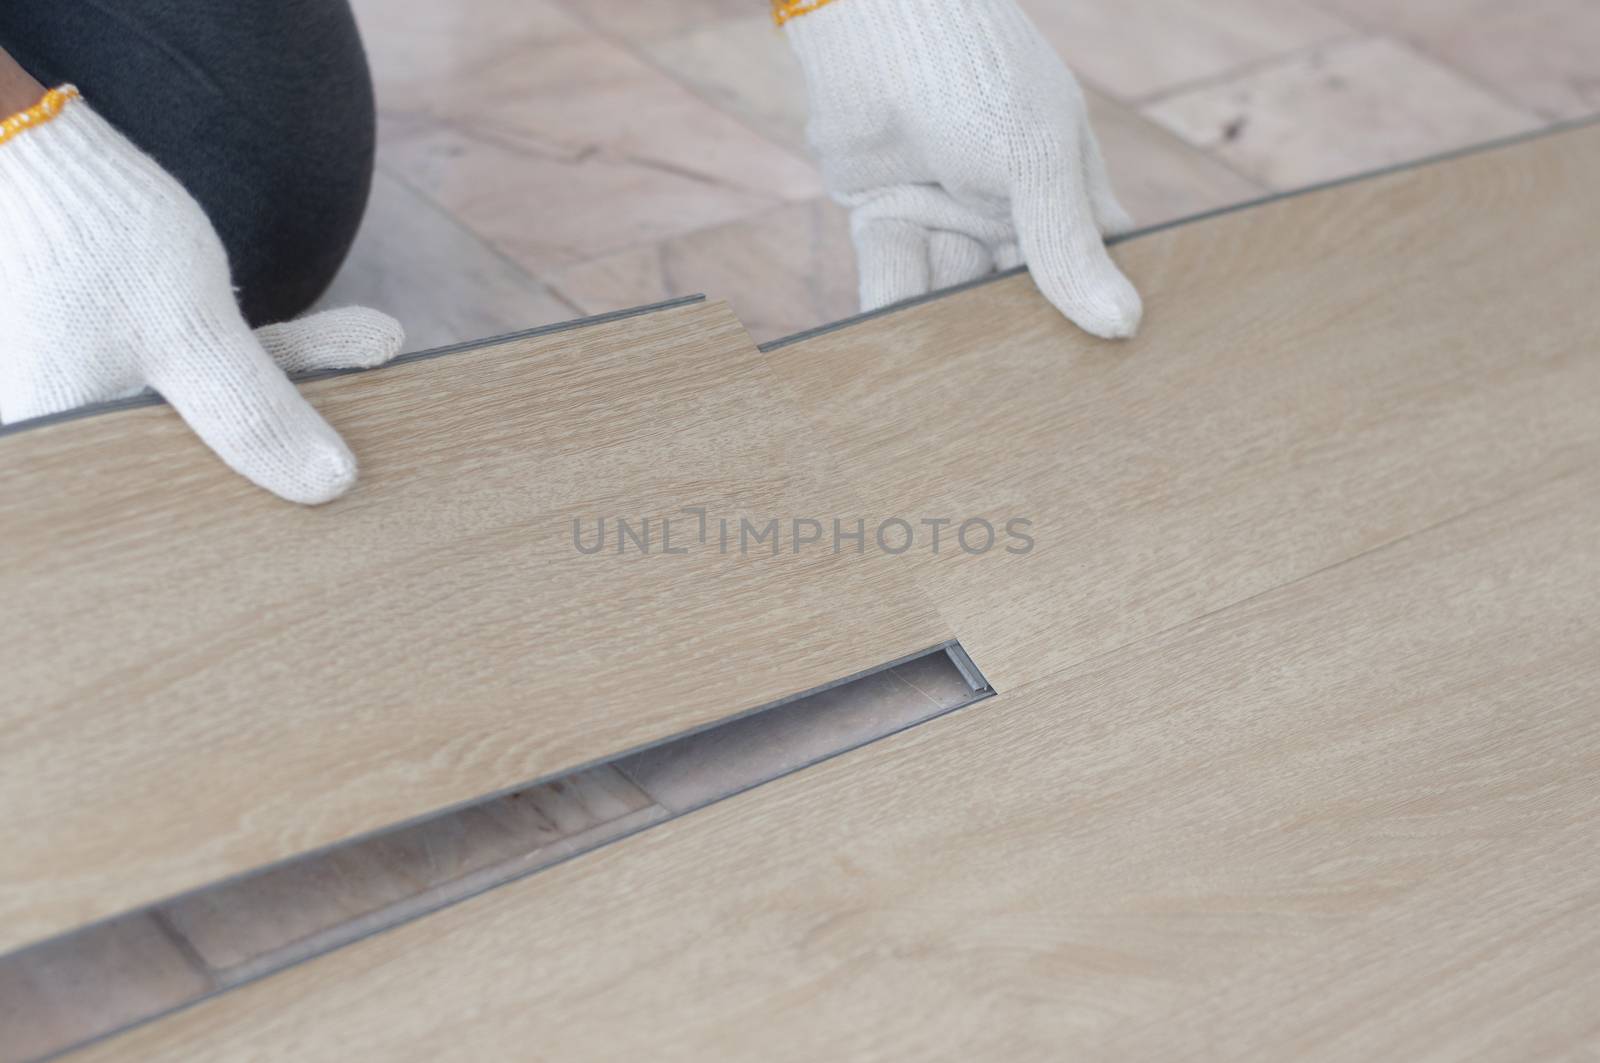 Hand of worker installing wood laminate vinyl floor. Copyspace f by Kingsman911